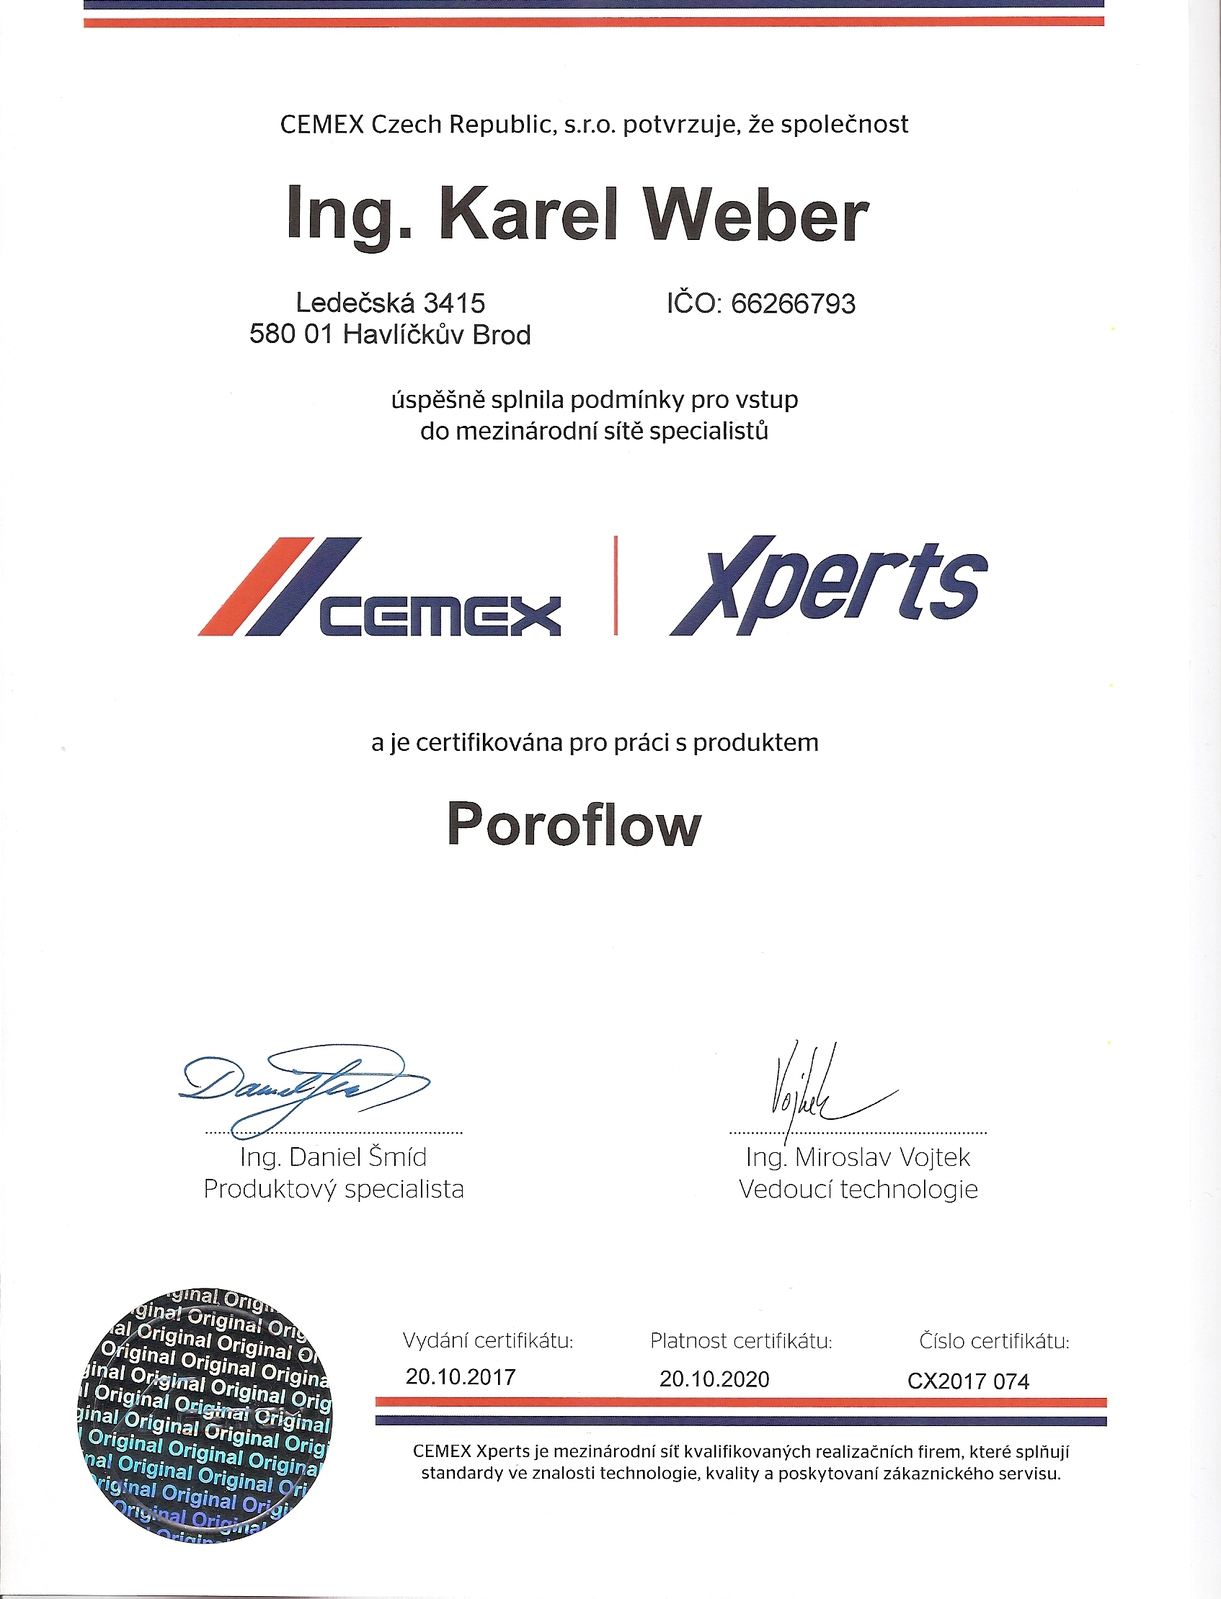 Certifikace Cemex - Poroflow